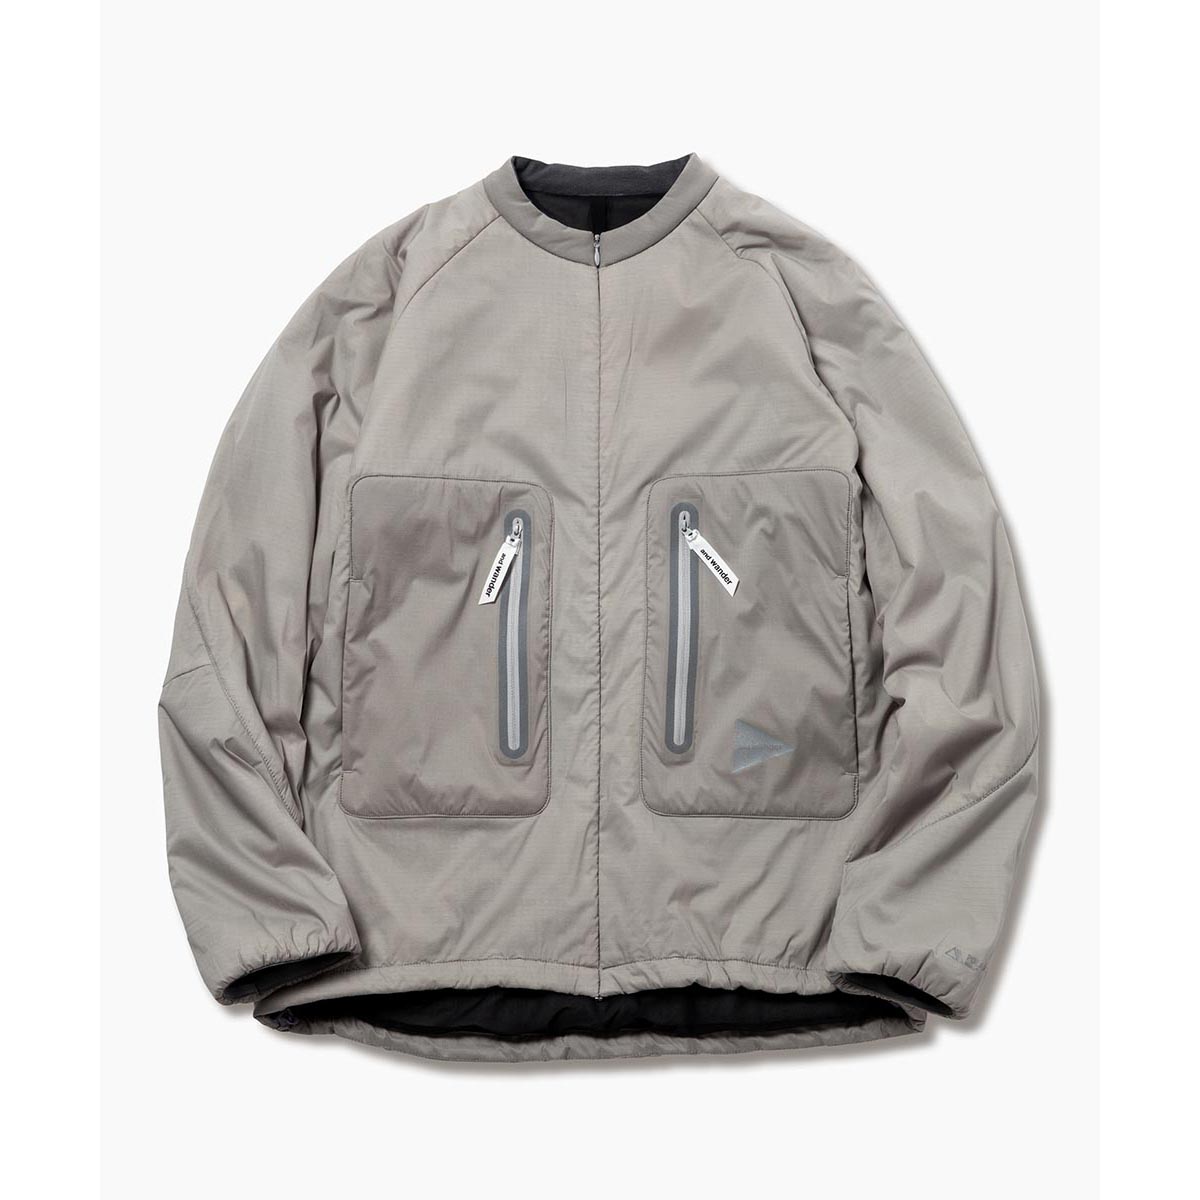 polartec alpha jacket - Gray